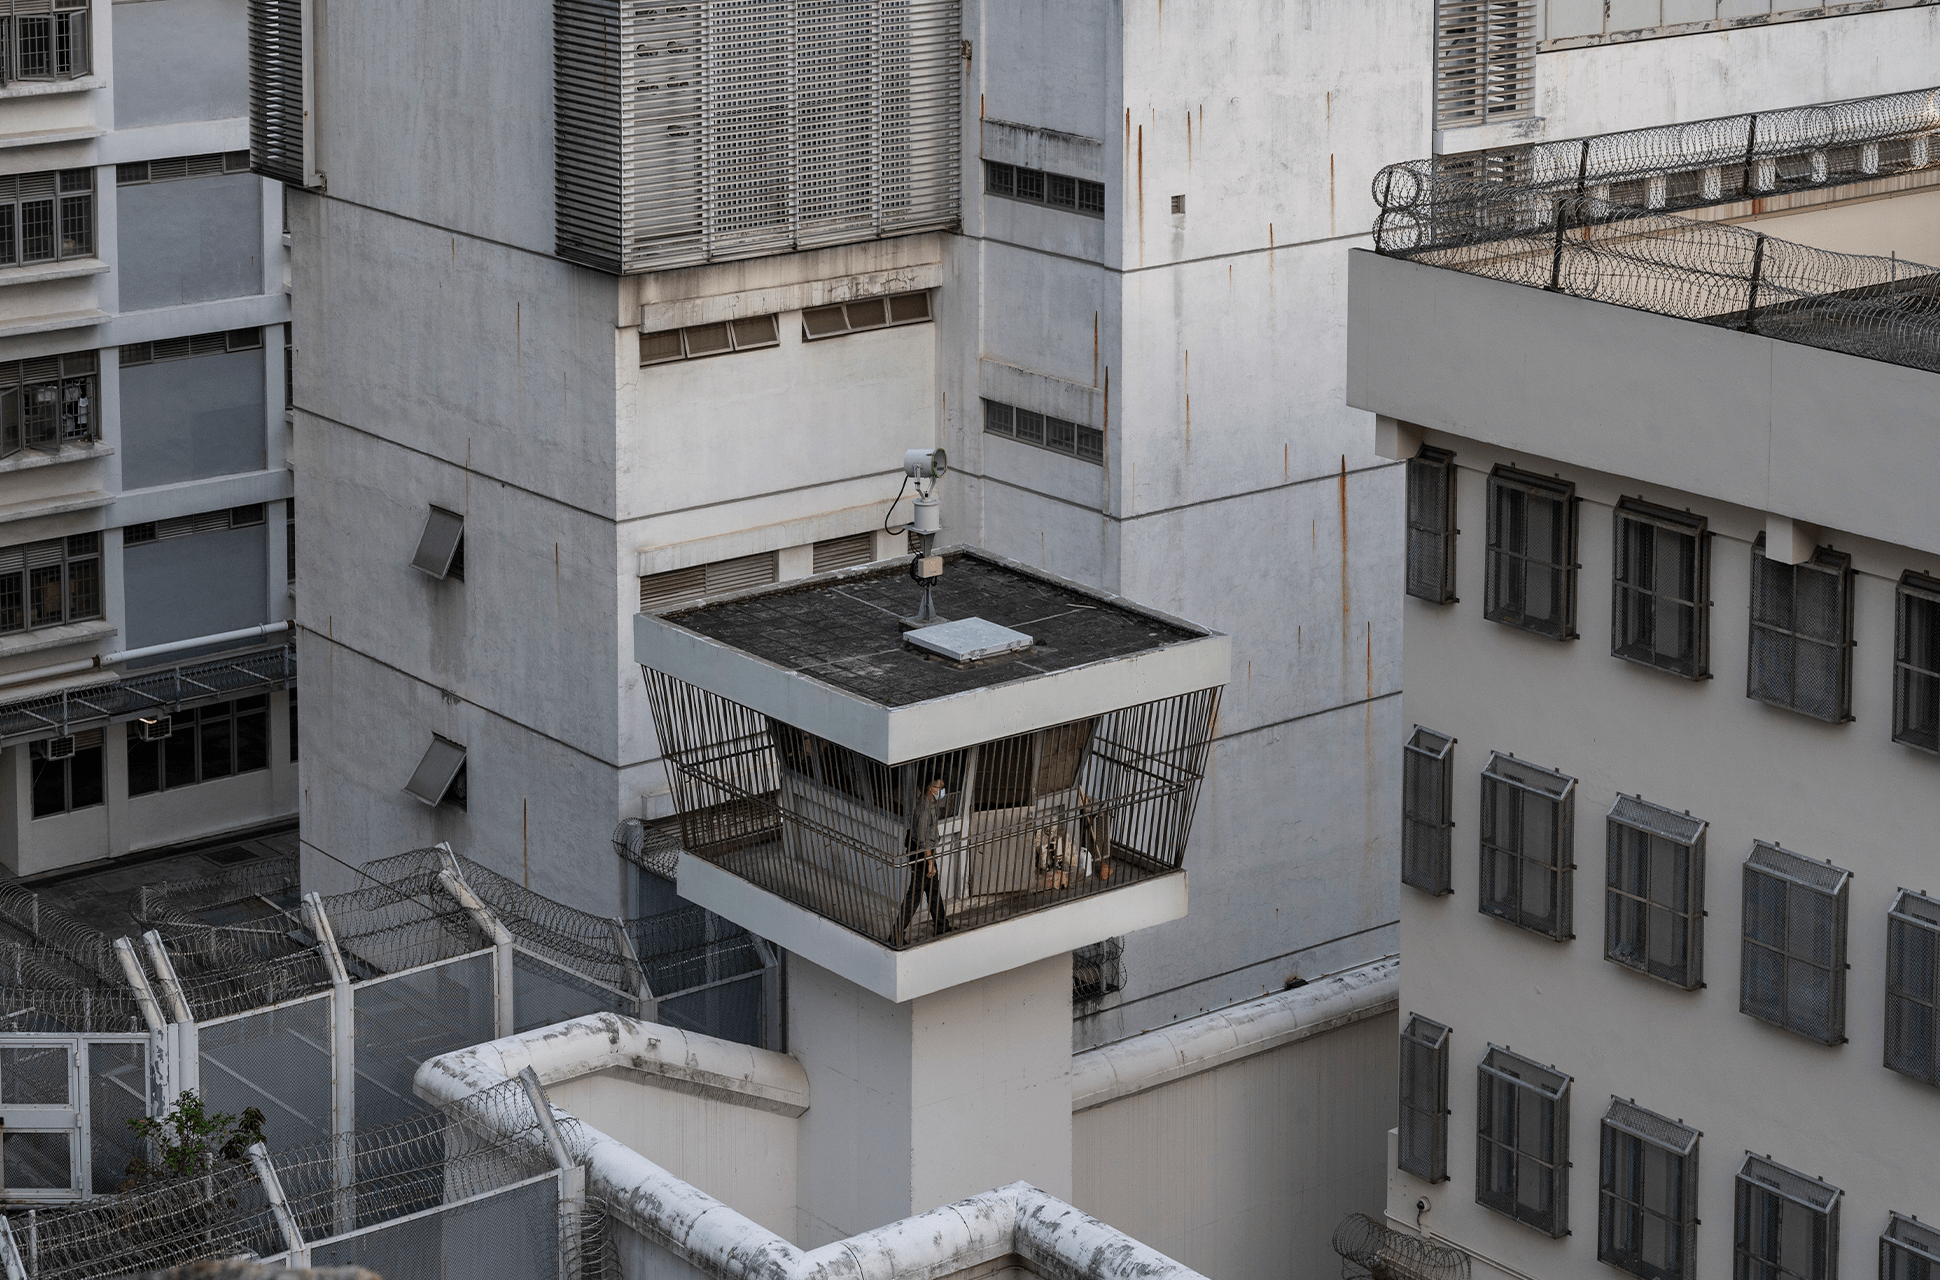 Un guardia de la prisión patrulla alrededor de la torre de vigilancia en el Centro de Recepción Lai Chi Kok, Hong Kong, China. Fotografía de Miguel Candela / REUTERS